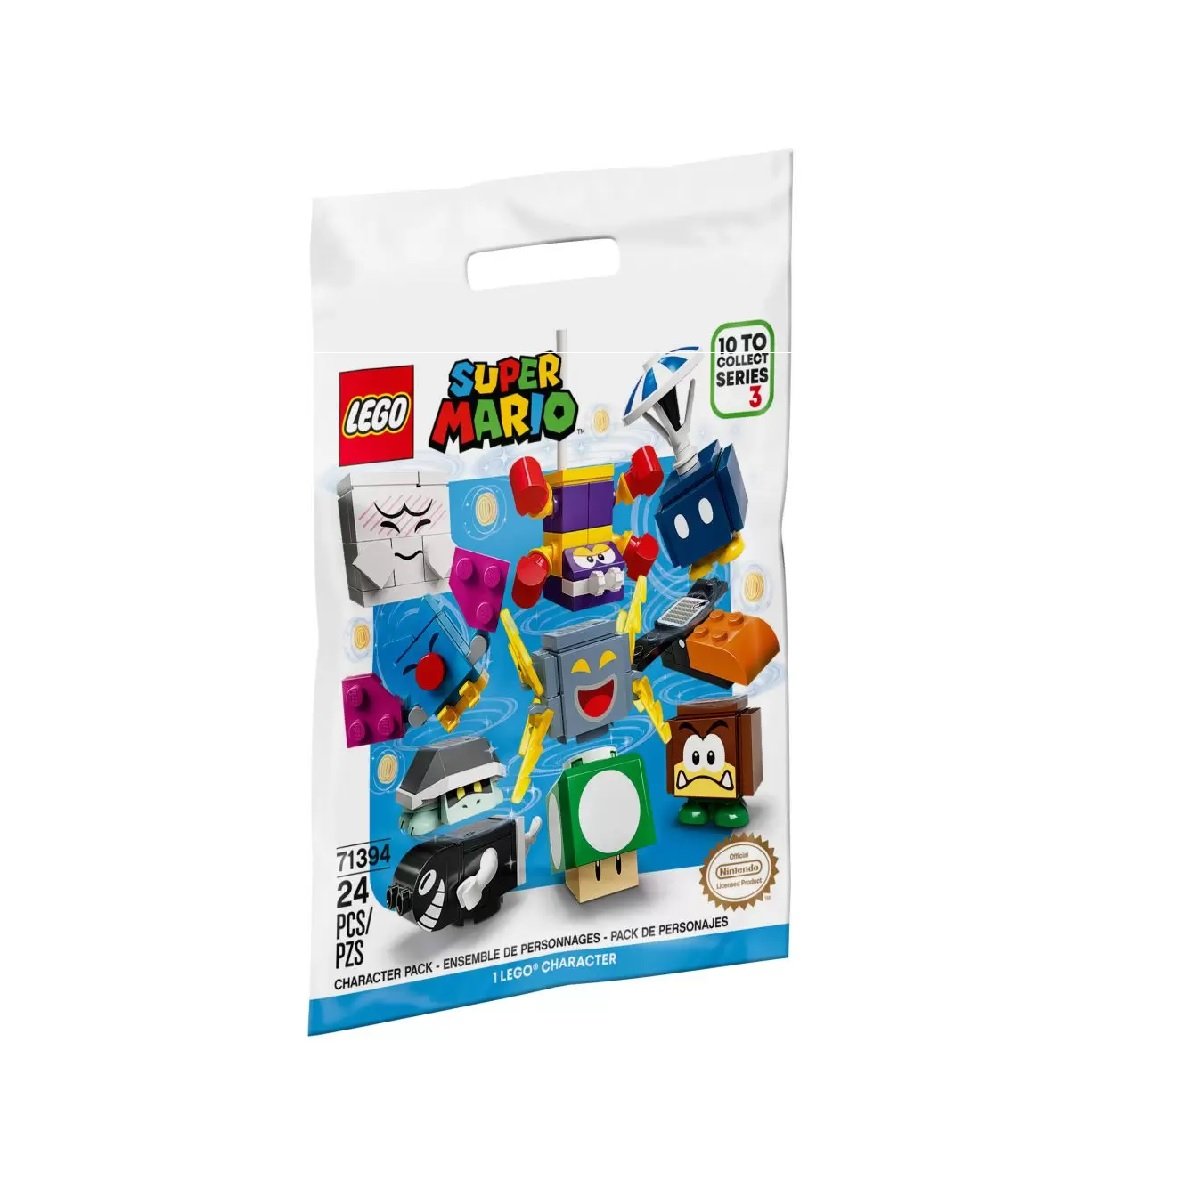 Lego Super Mario 24 Pc Serie 3 Pacote de Personagens 71394 - 1